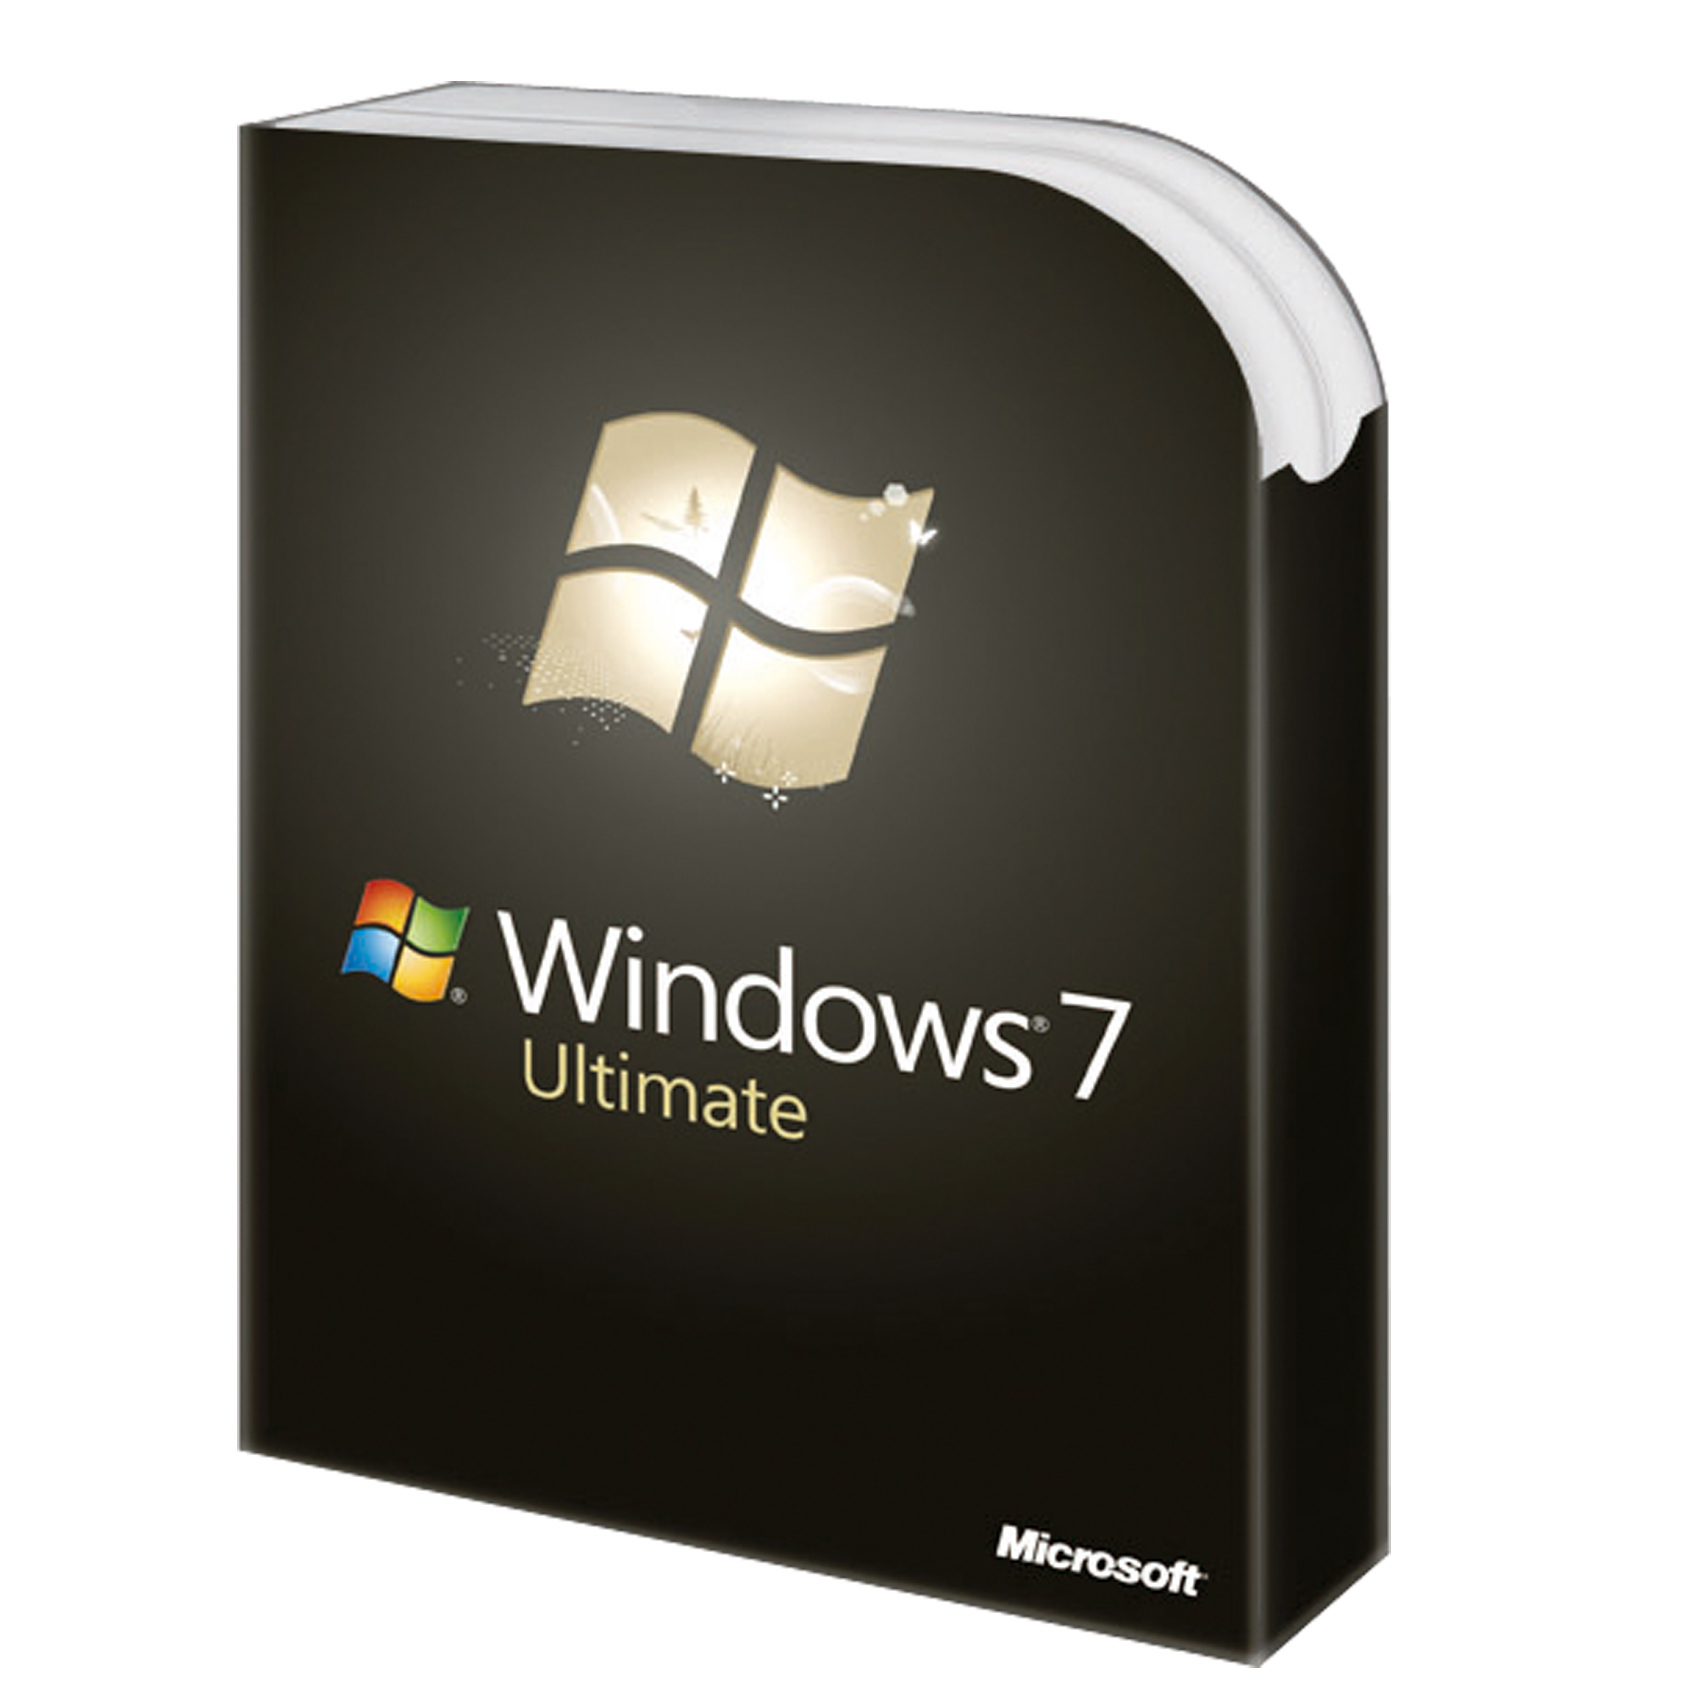 win 7 ultimate 64 bit download free